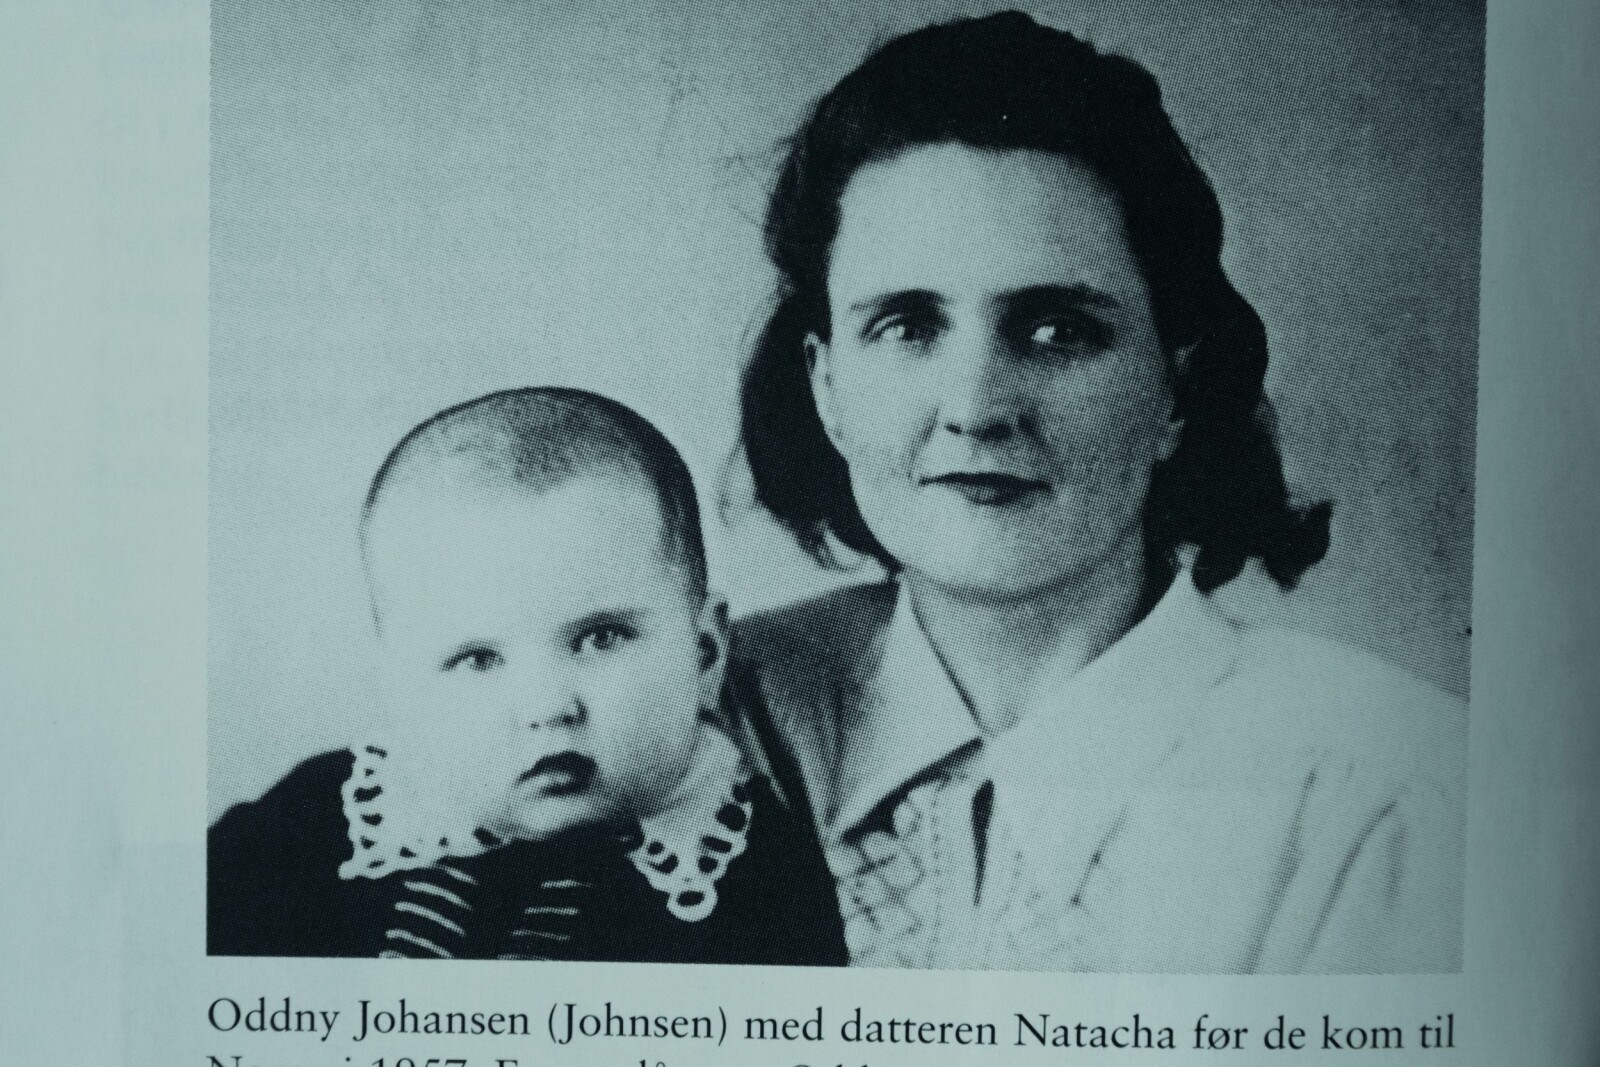 <b>MOR OG DATTER:</b> Oddny Johnsen sammen med datteren Natacha. Bildet er tatt mens sovjetiske myndigheter holdt dem mot sin vilje.